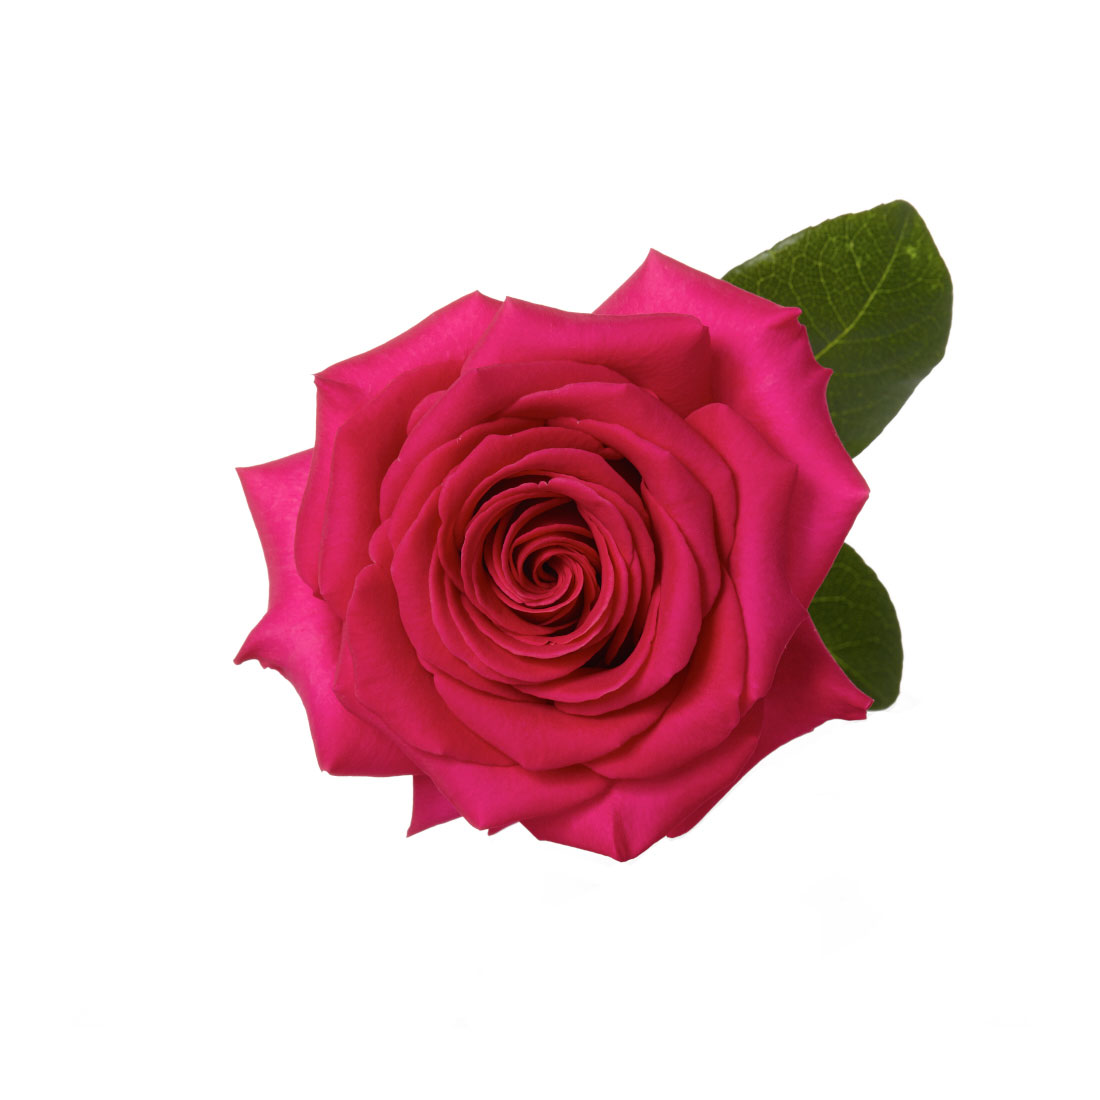 Rose, Hot Pink Pink Floyd - Jacksonville Flower Market